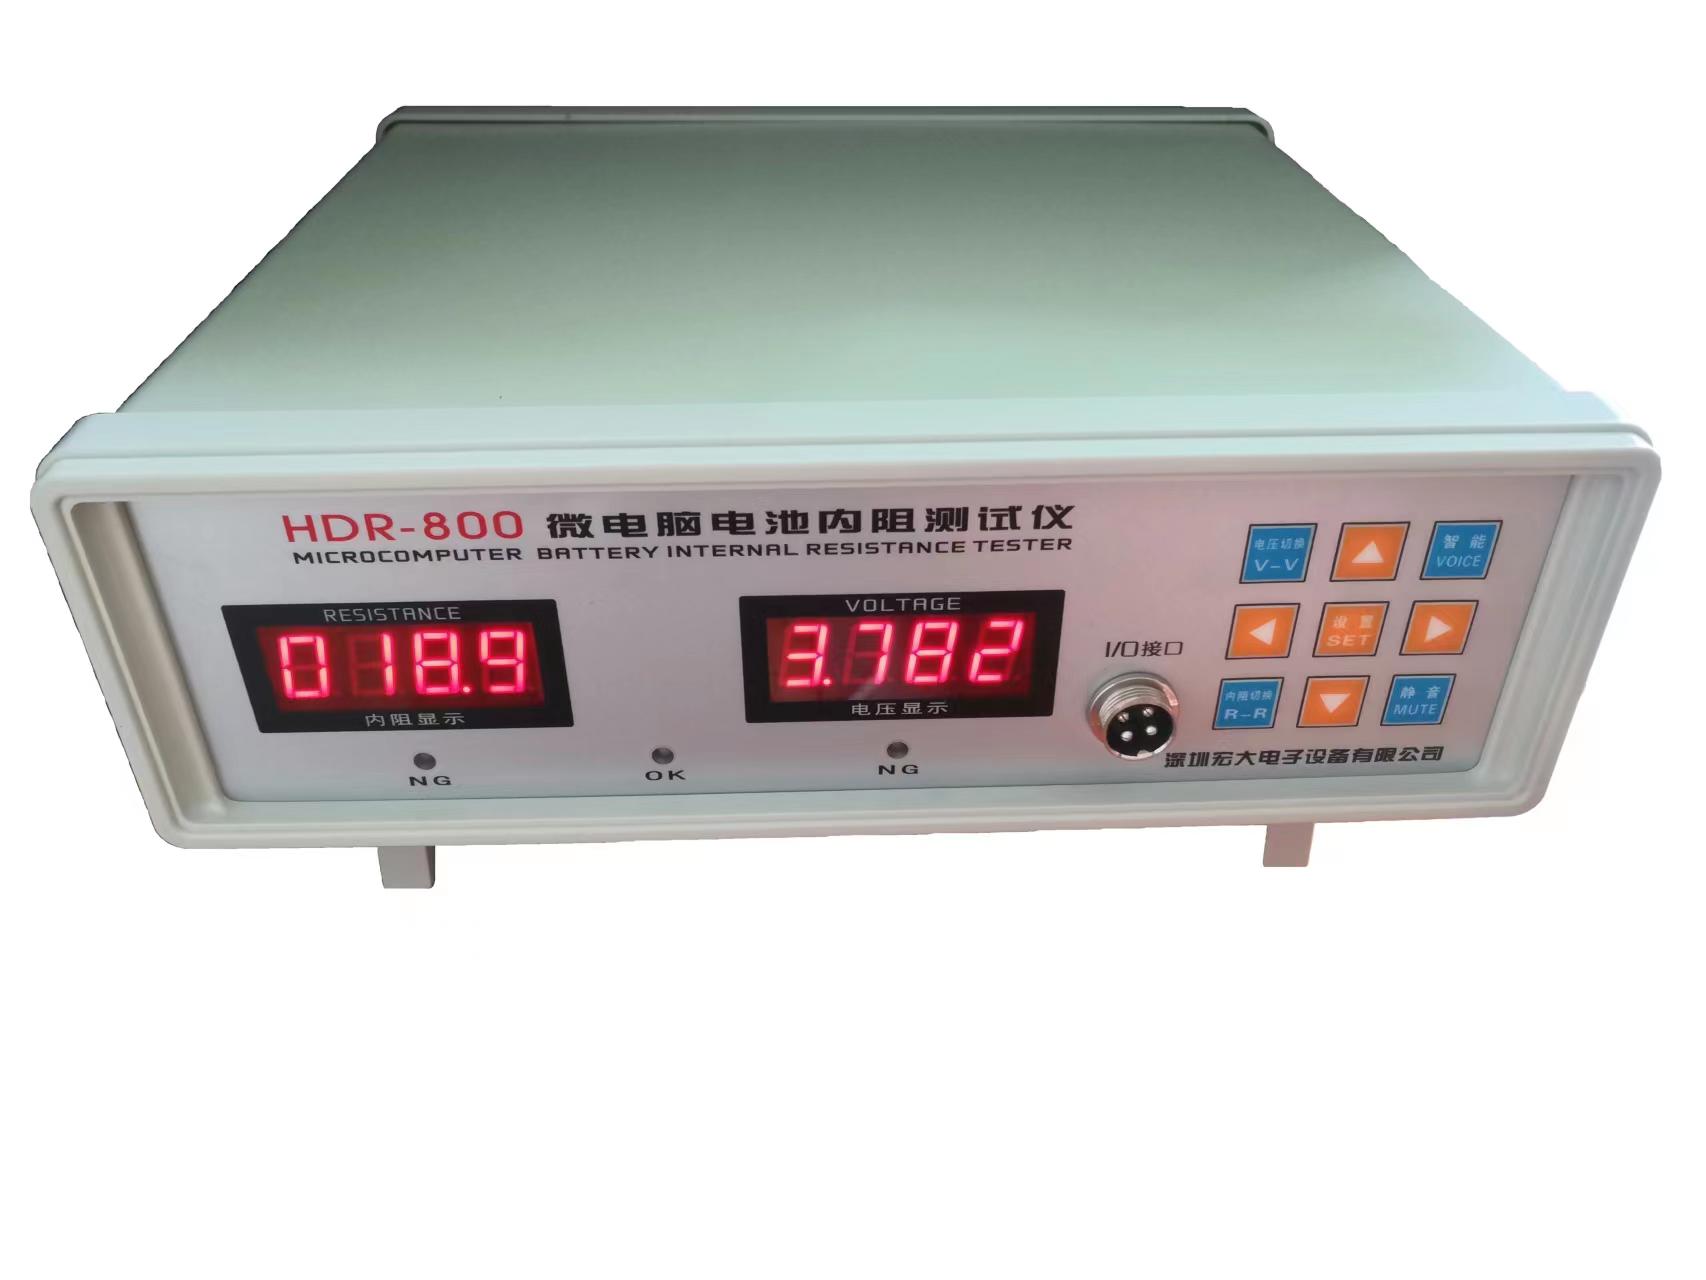 HDR-800微电脑电池内阻测试仪智能电池内阻测试仪